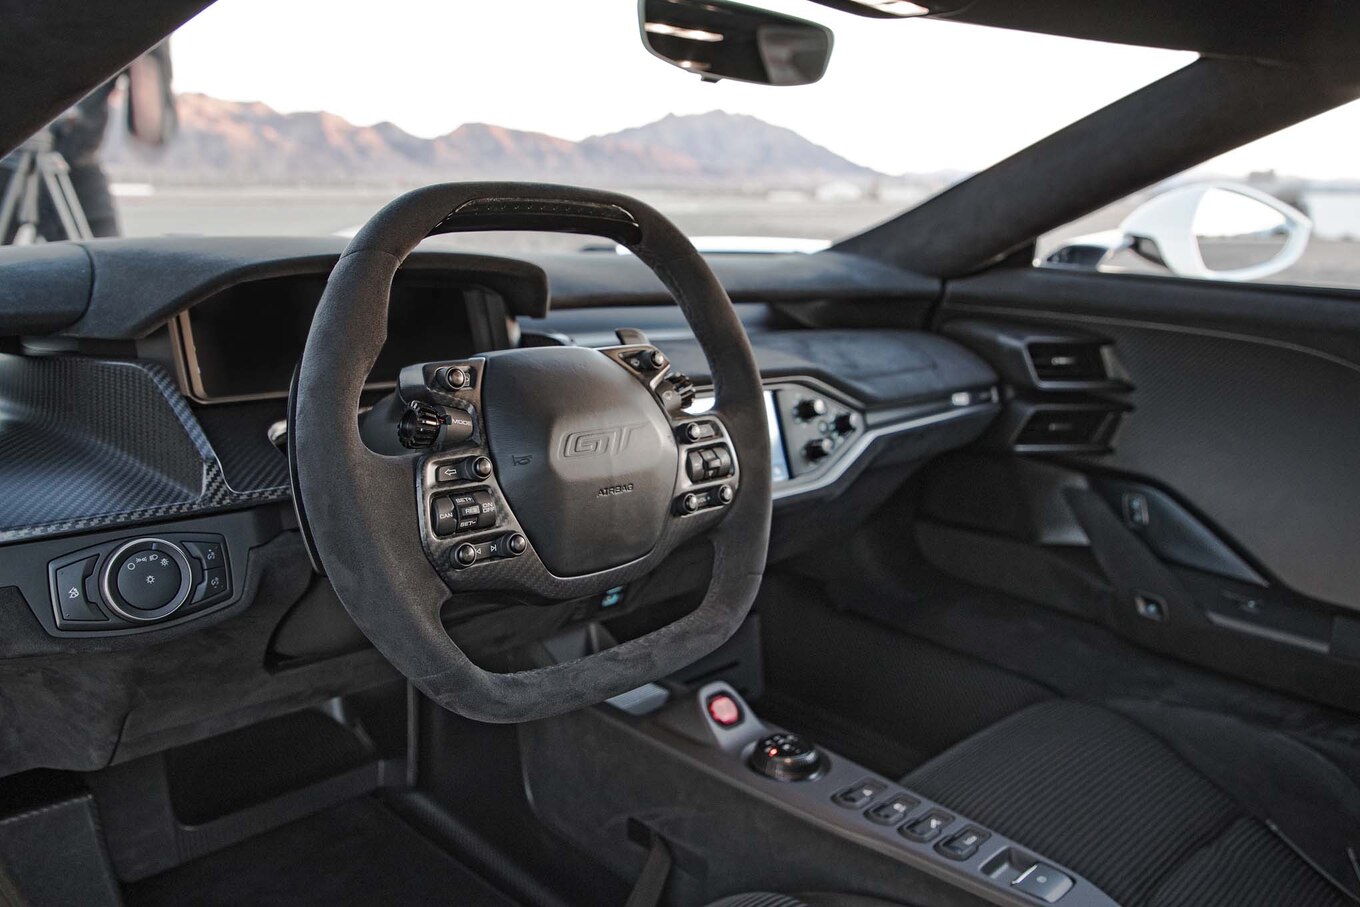 2017-Ford-GT-steering-wheel.jpg